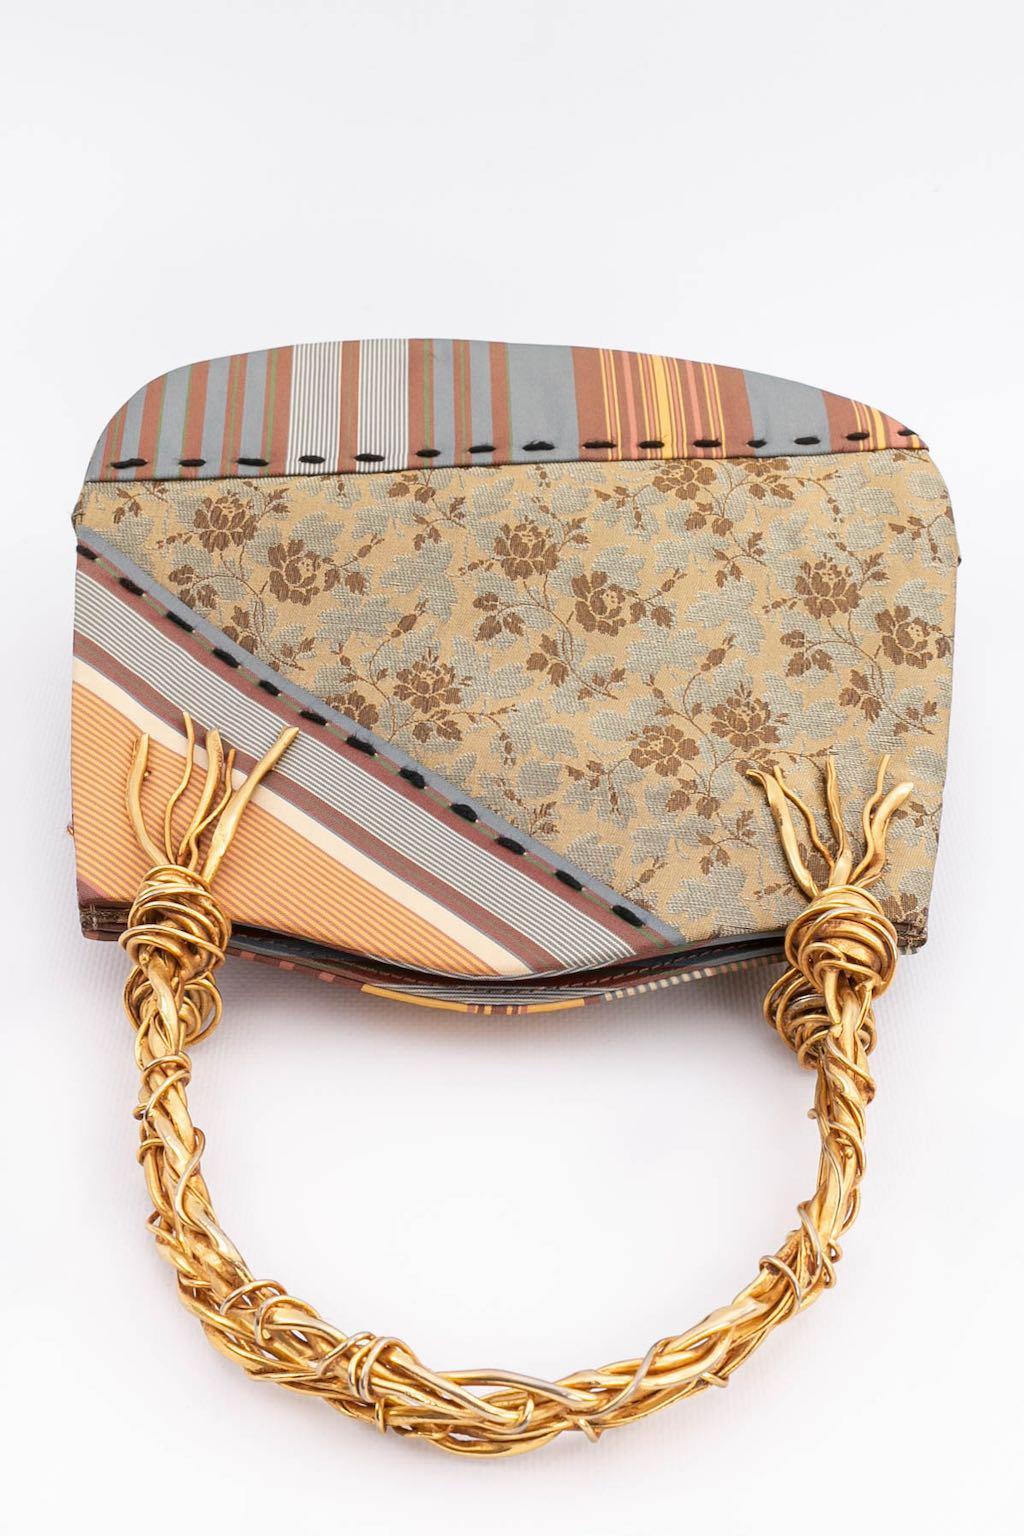 Women's Christian Lacroix Patchwork Bag For Sale